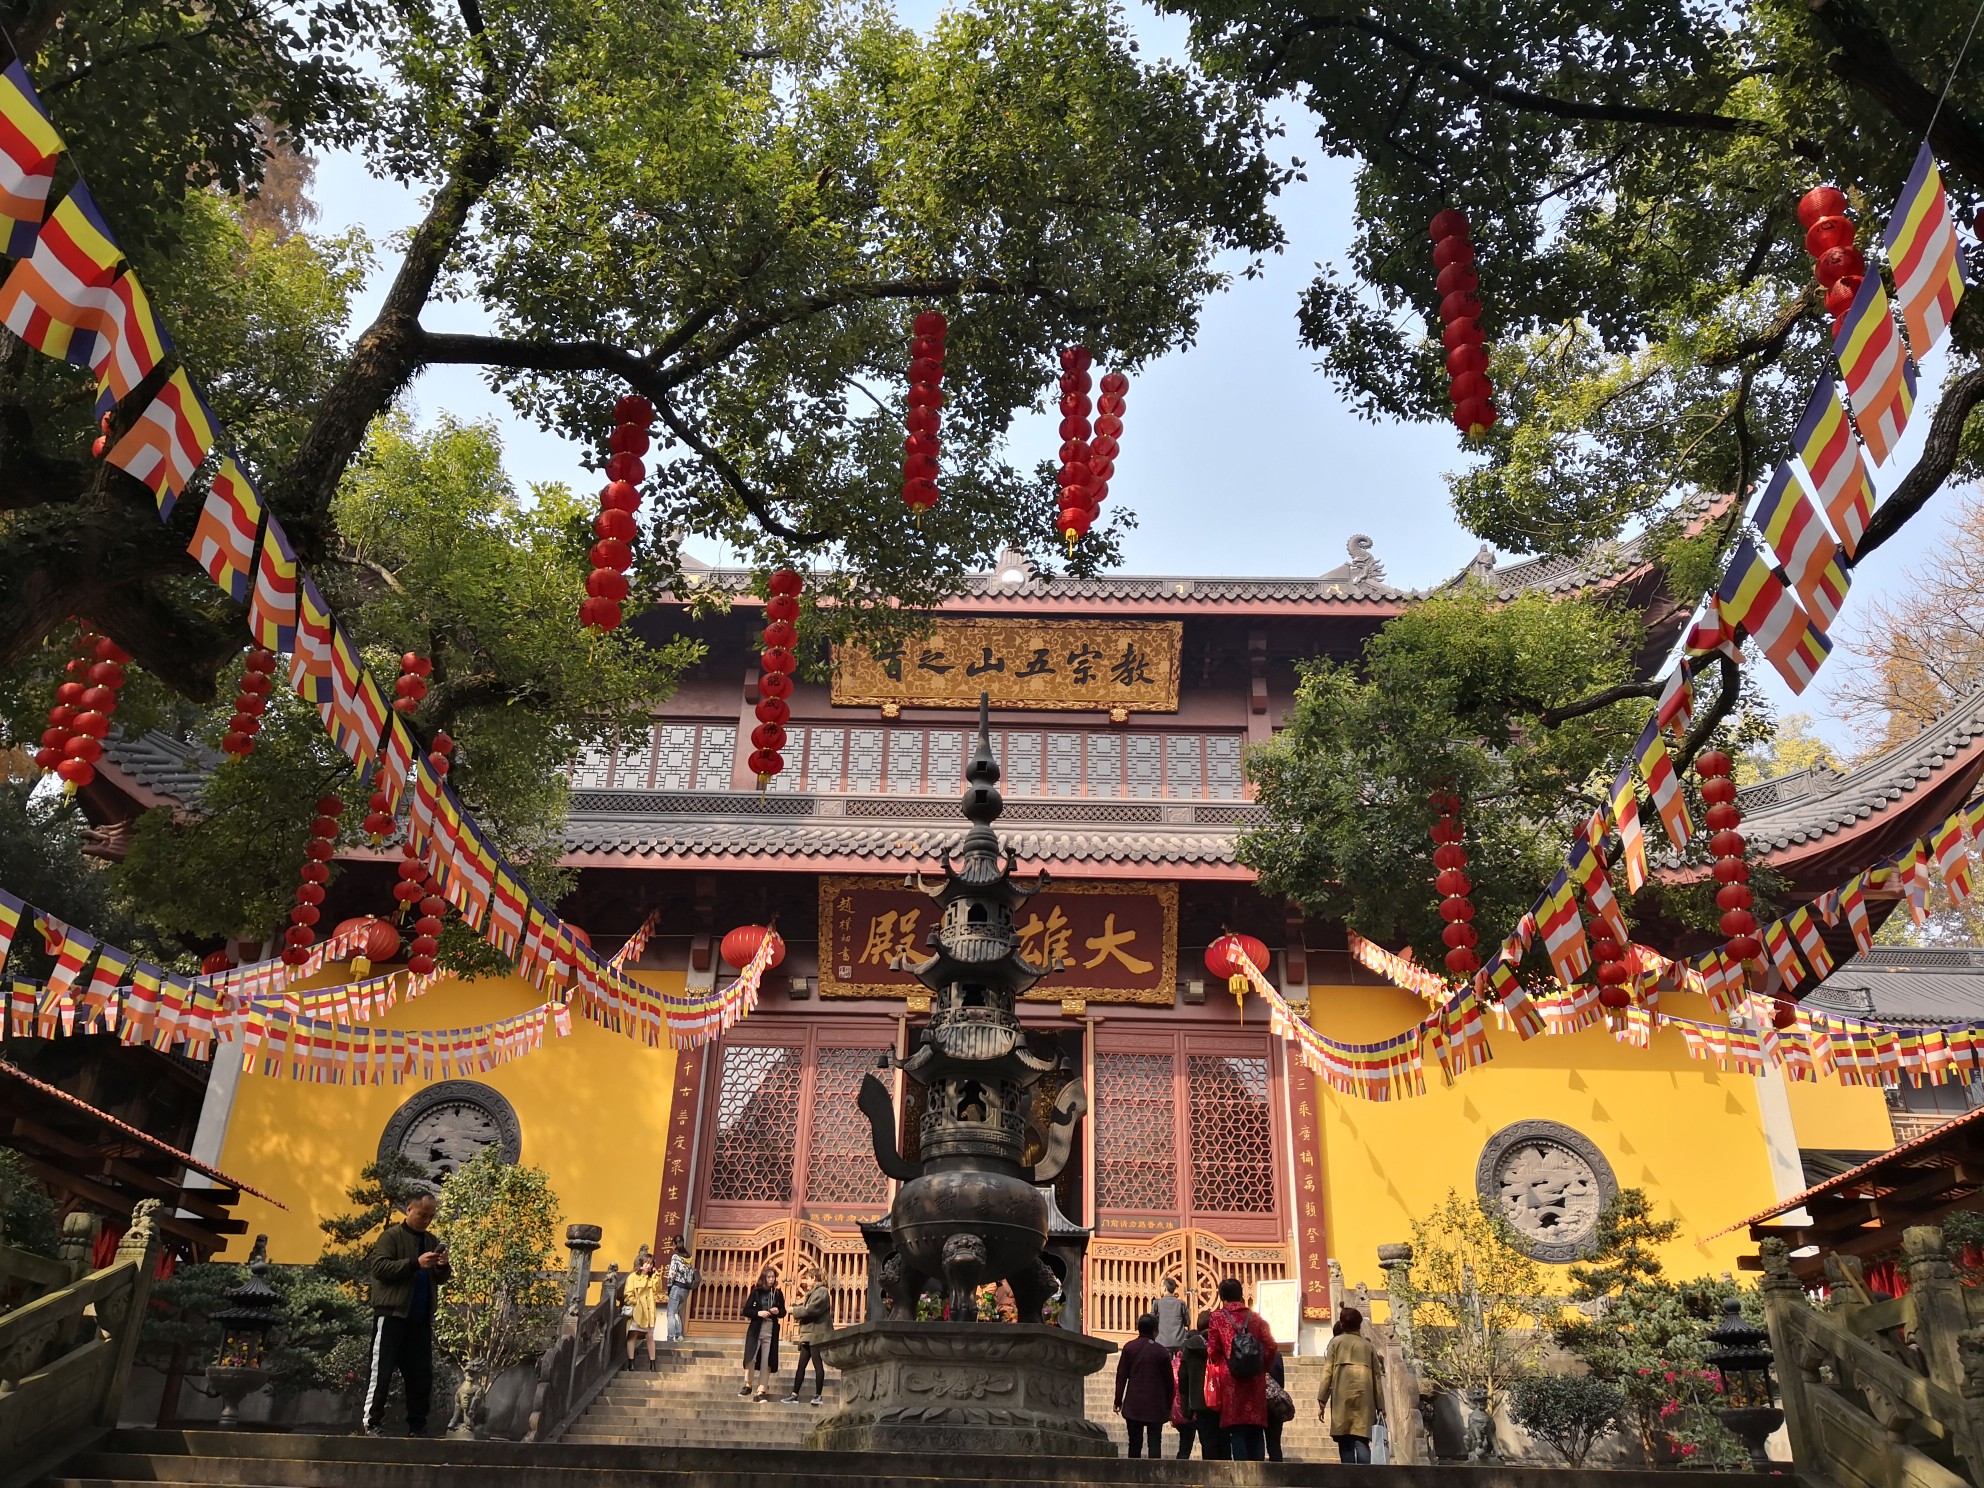 12月1日游览参观杭州西湖区的三天竺之法喜寺